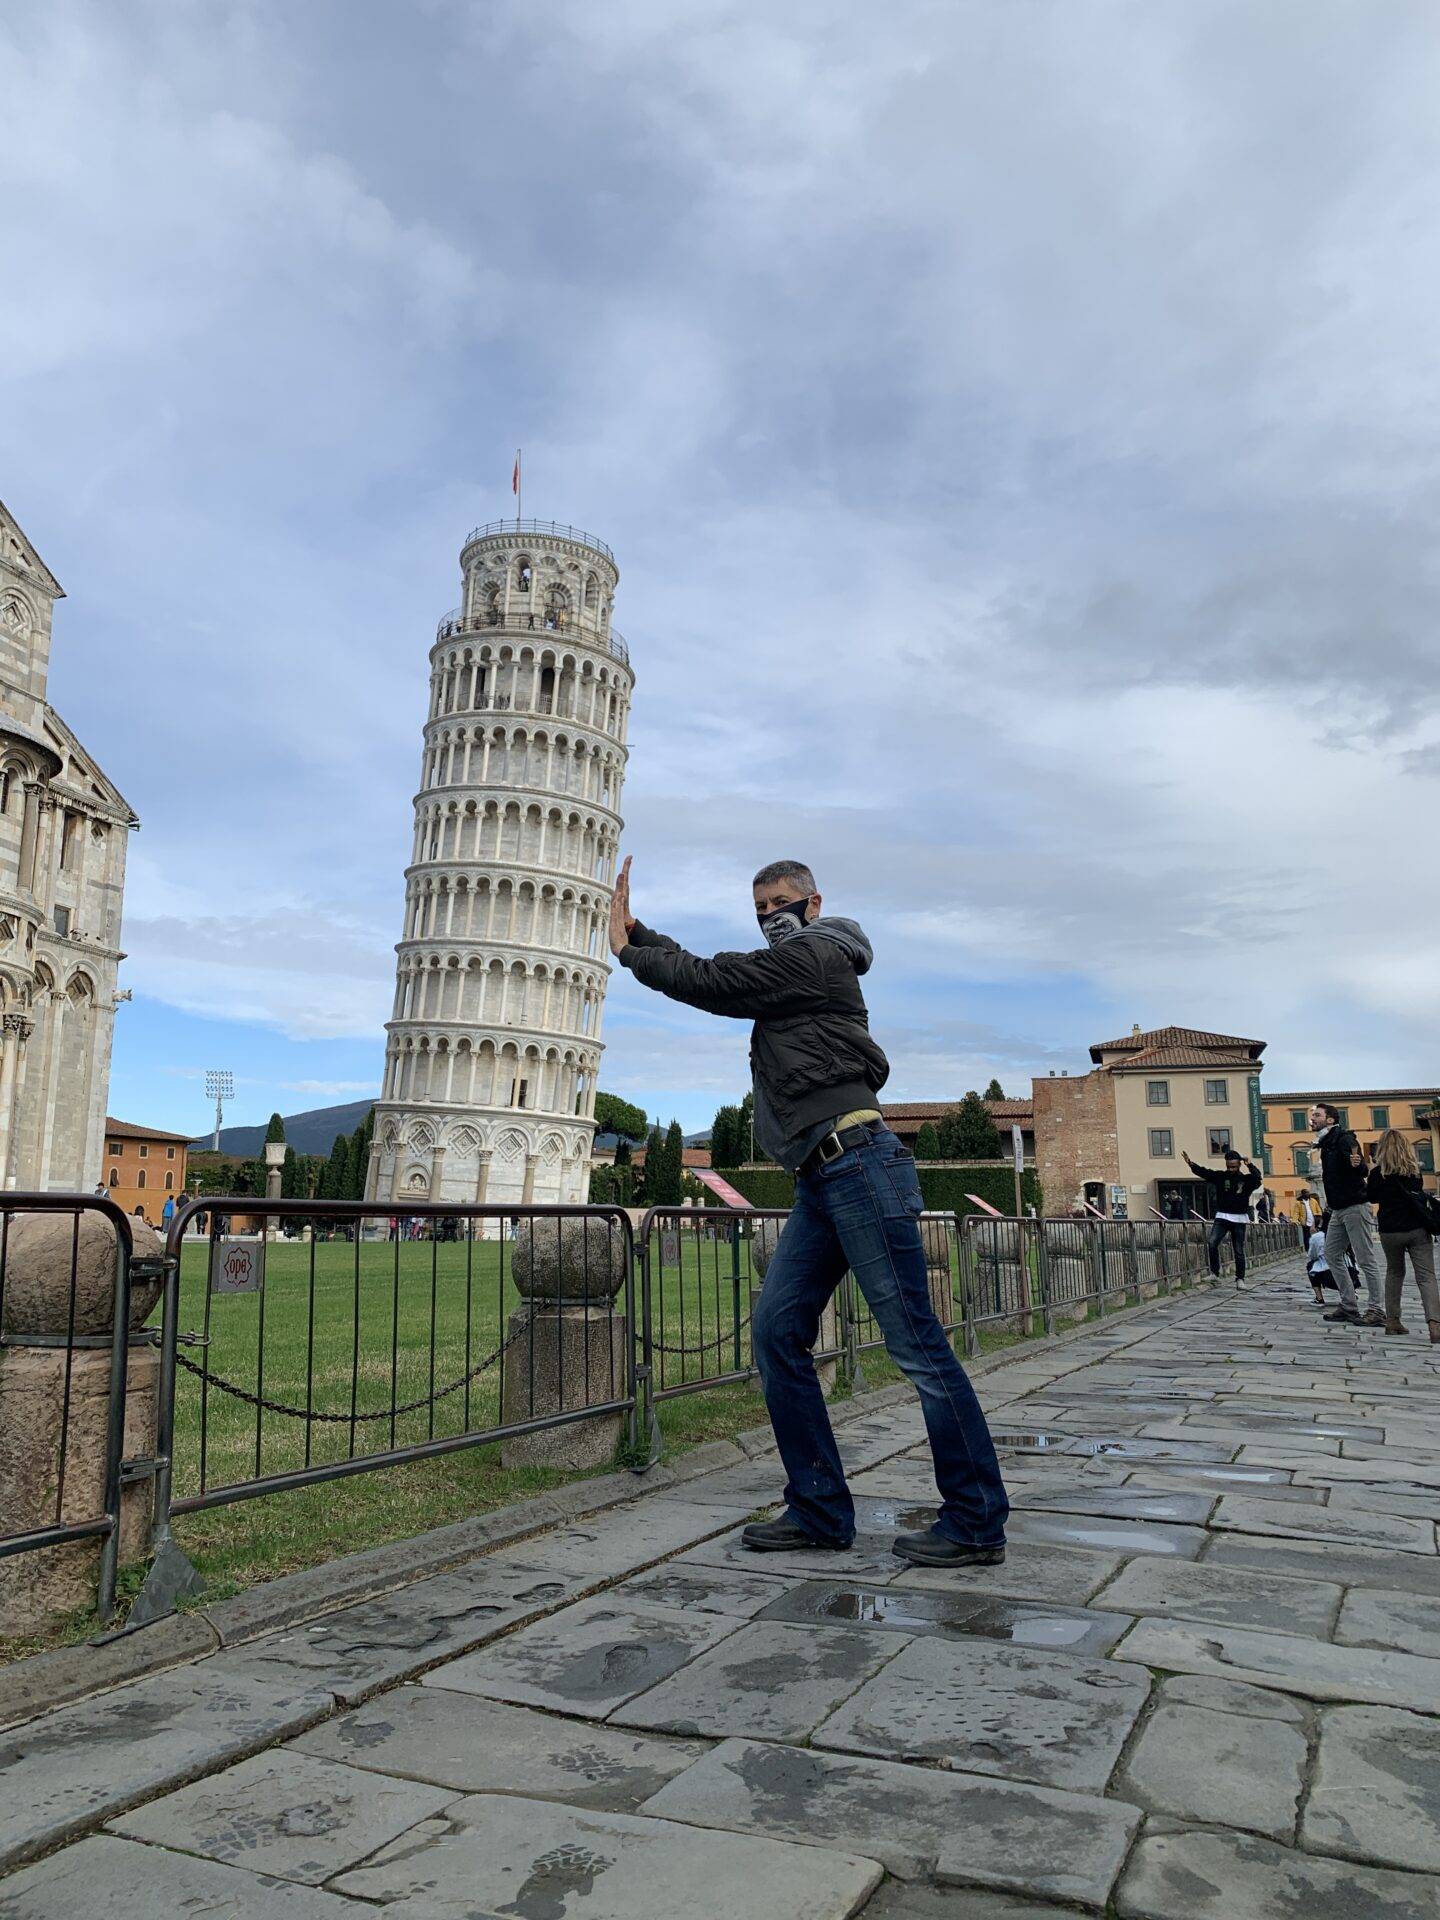 Torgit stützt den schiefen Turm von Pisa